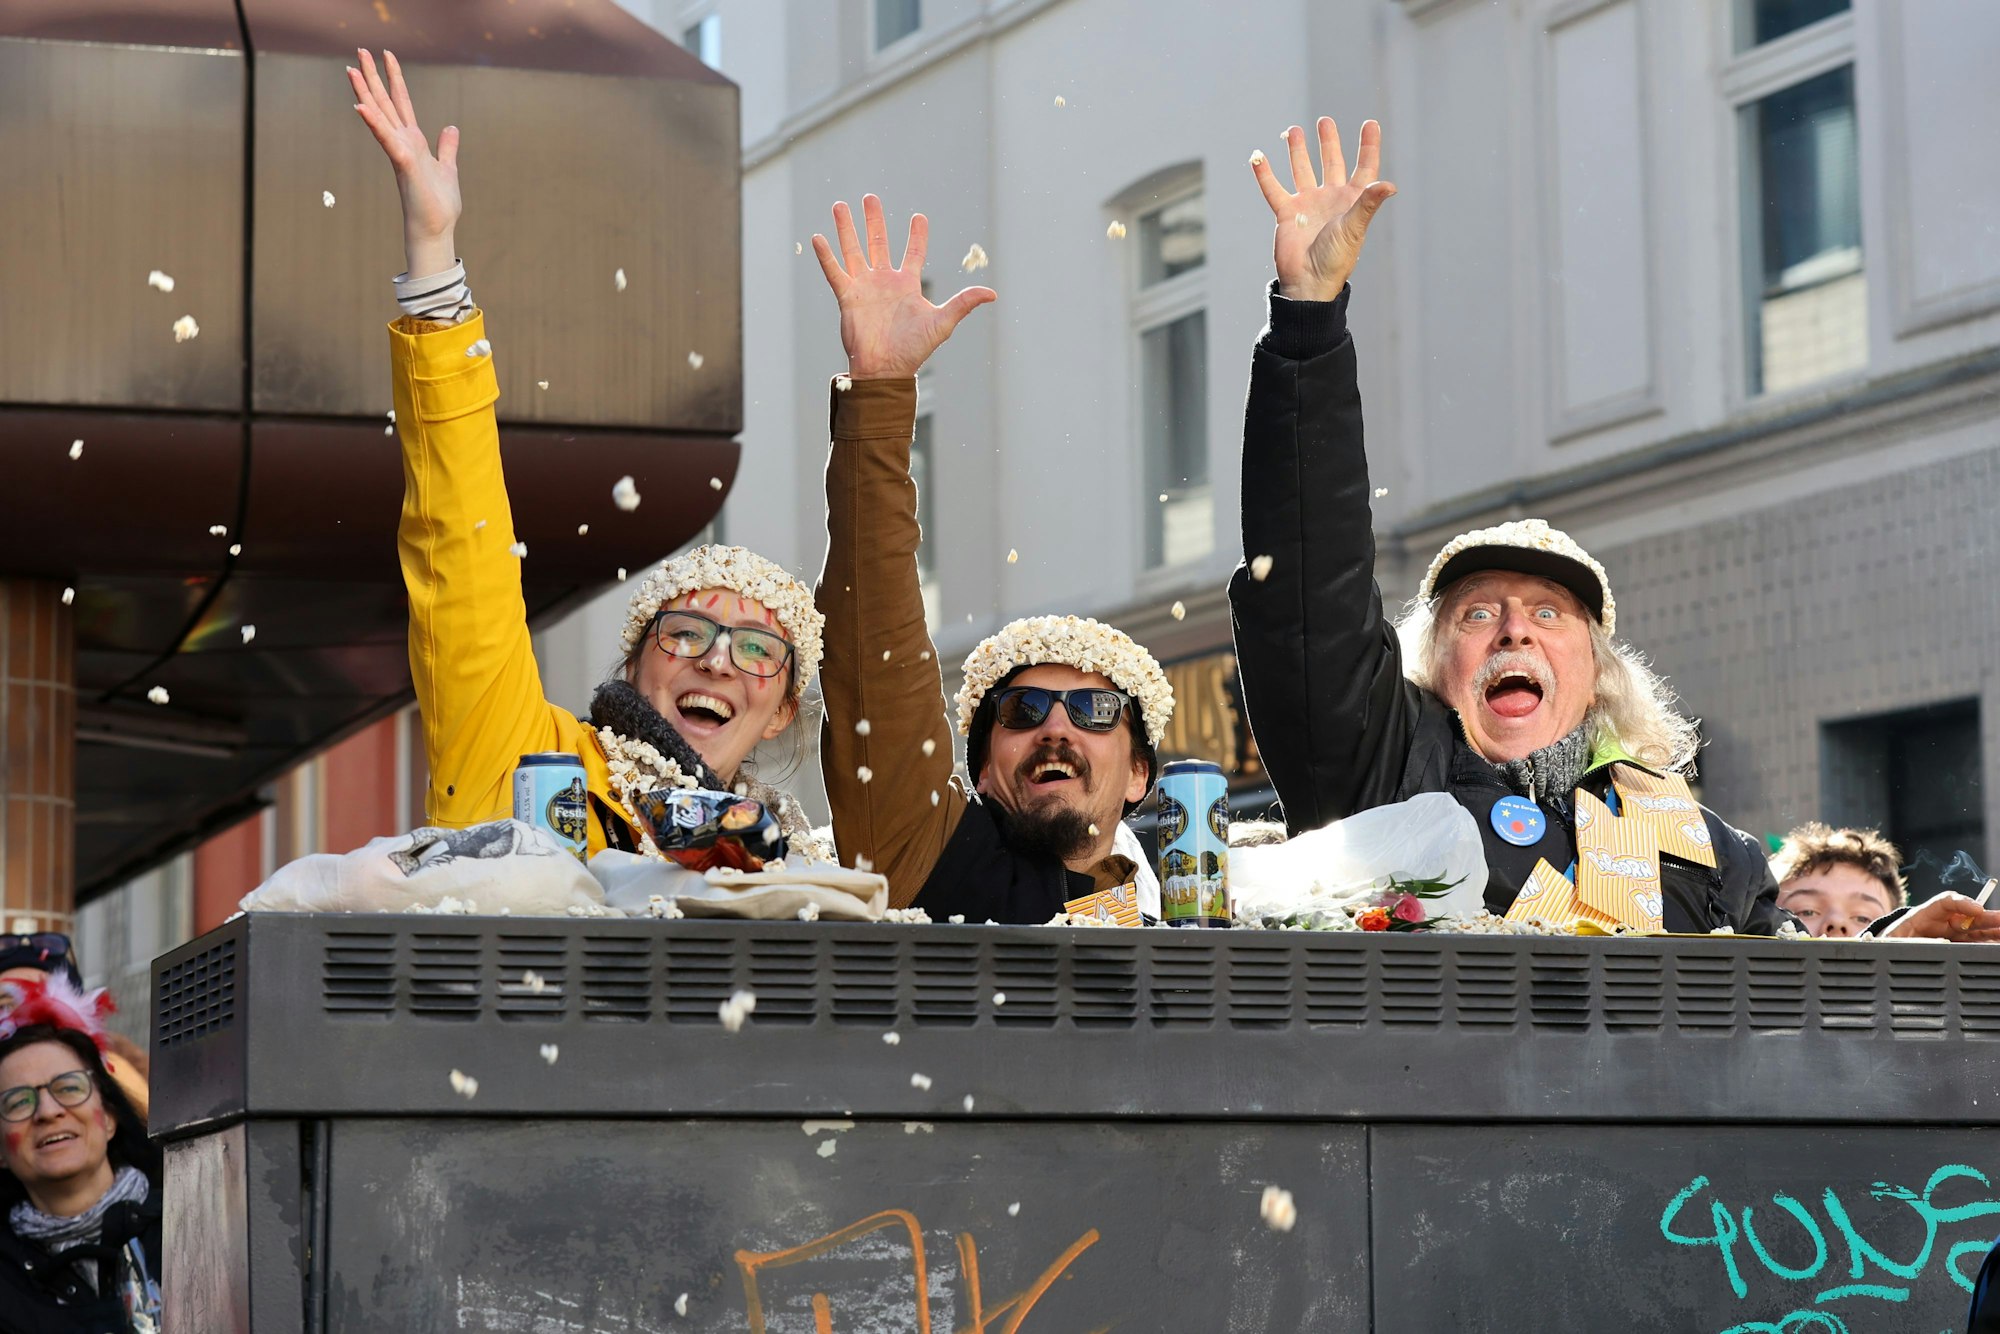 Dreie kostümierte Zuschauende tragen Kopfbedeckungen aus Popcorn und blicken lachend in die Kamera.